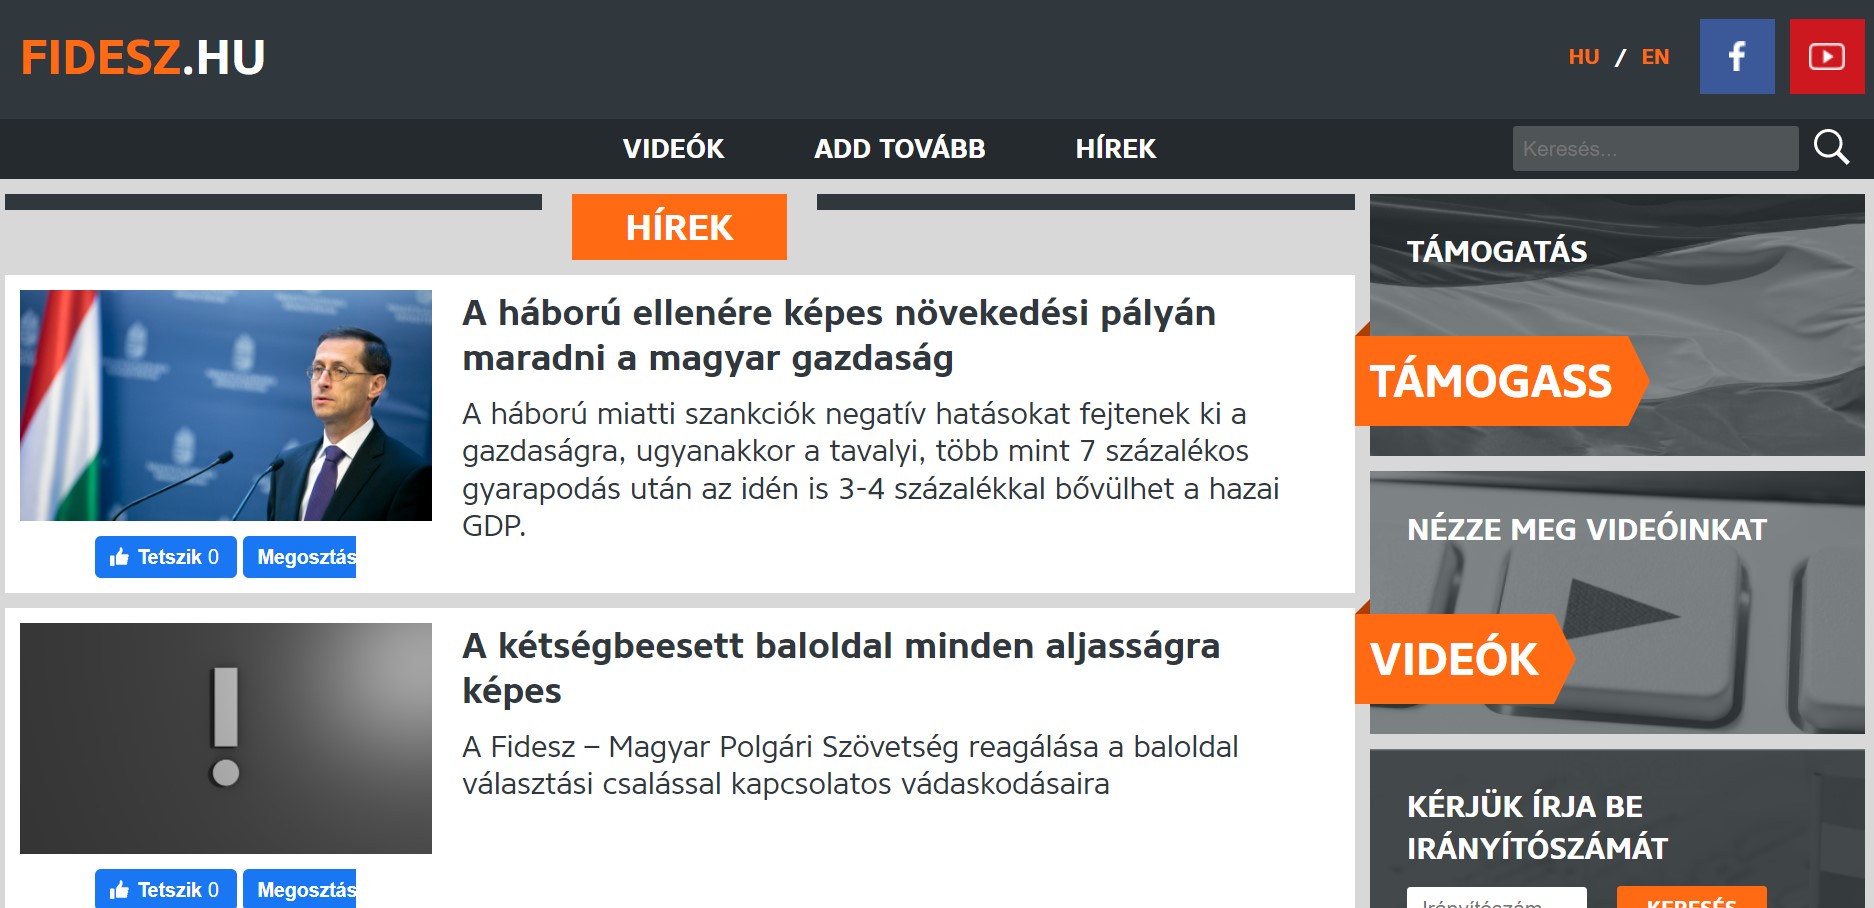 Fidesz-Website wurde von unbekannten Hackern angegriffen, Partei beschuldigt 